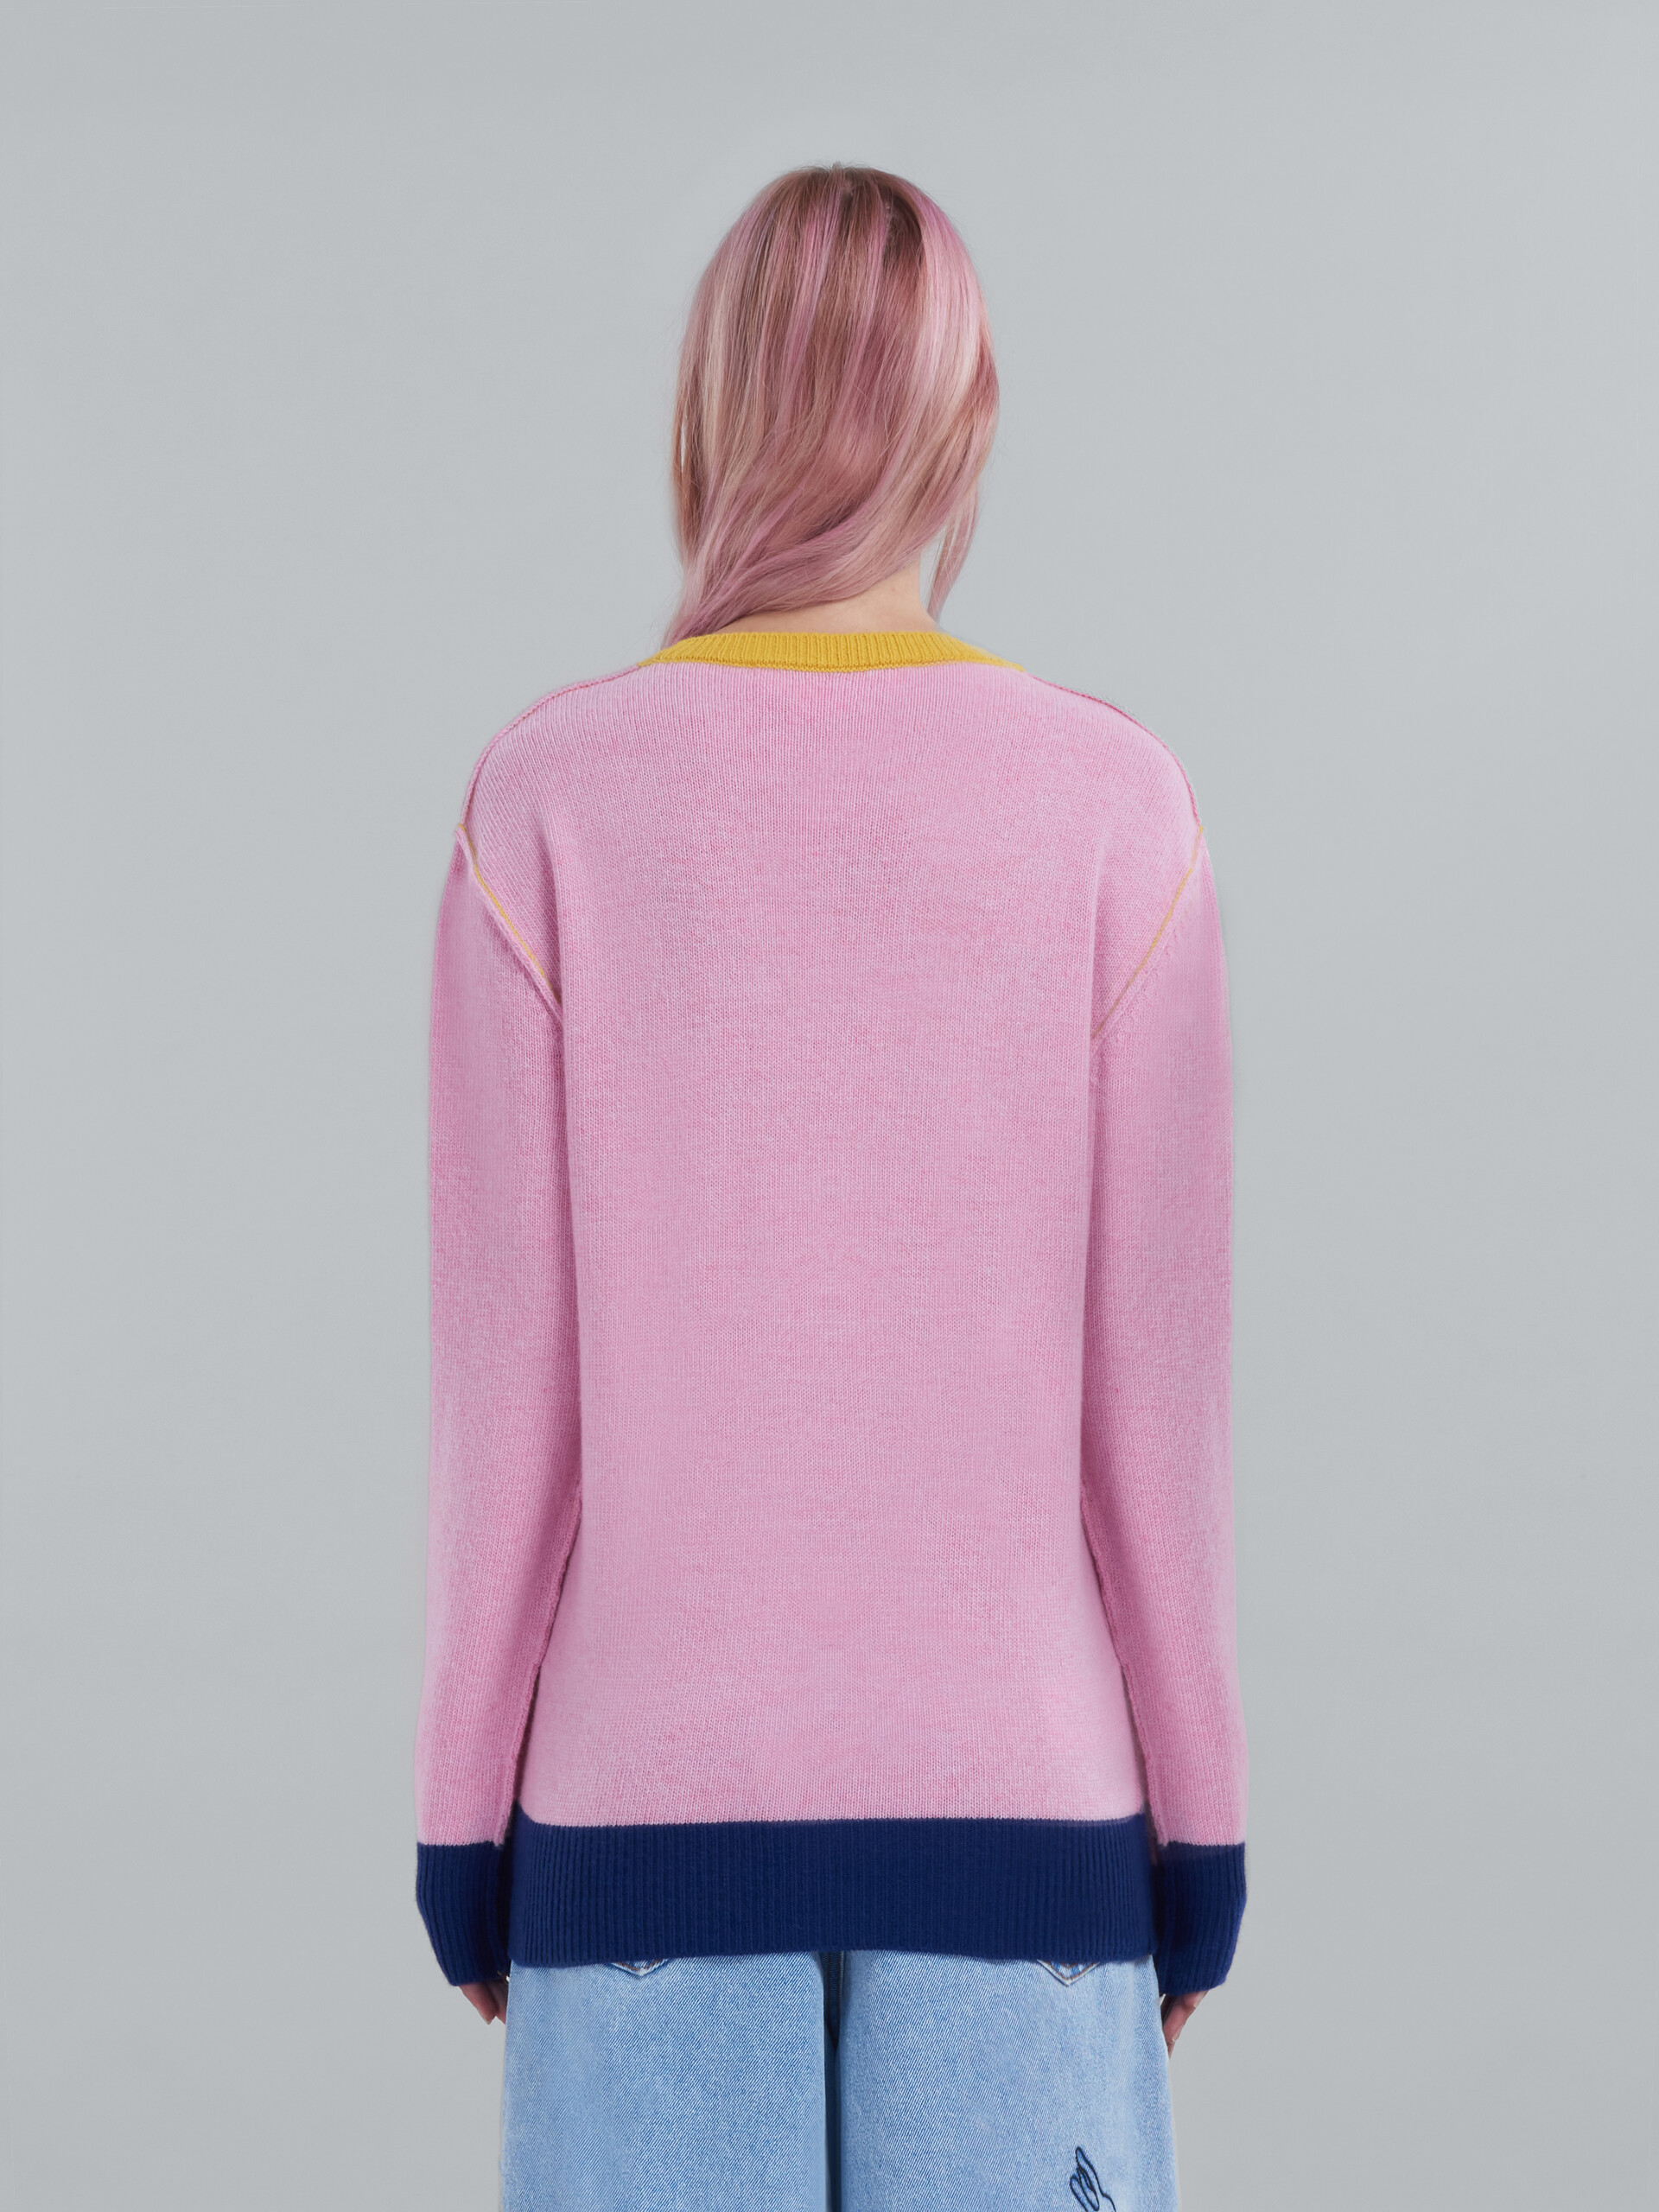 로고 장식 핑크 울 스웨터 - 풀오버 - Image 3